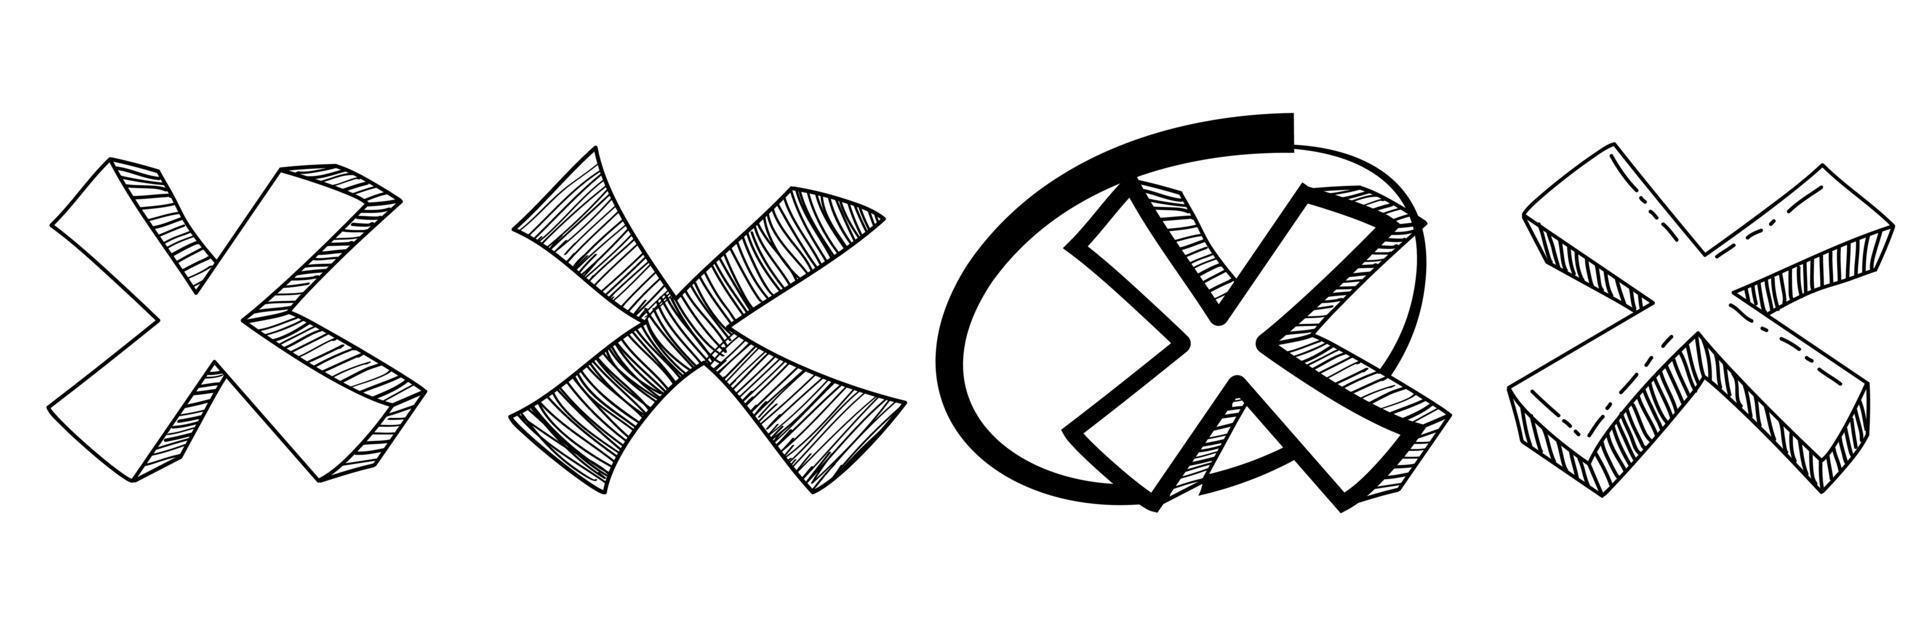 signos x dibujados a mano. conjunto de garabatos de marca incorrecta o falsa. ilustración vectorial vector